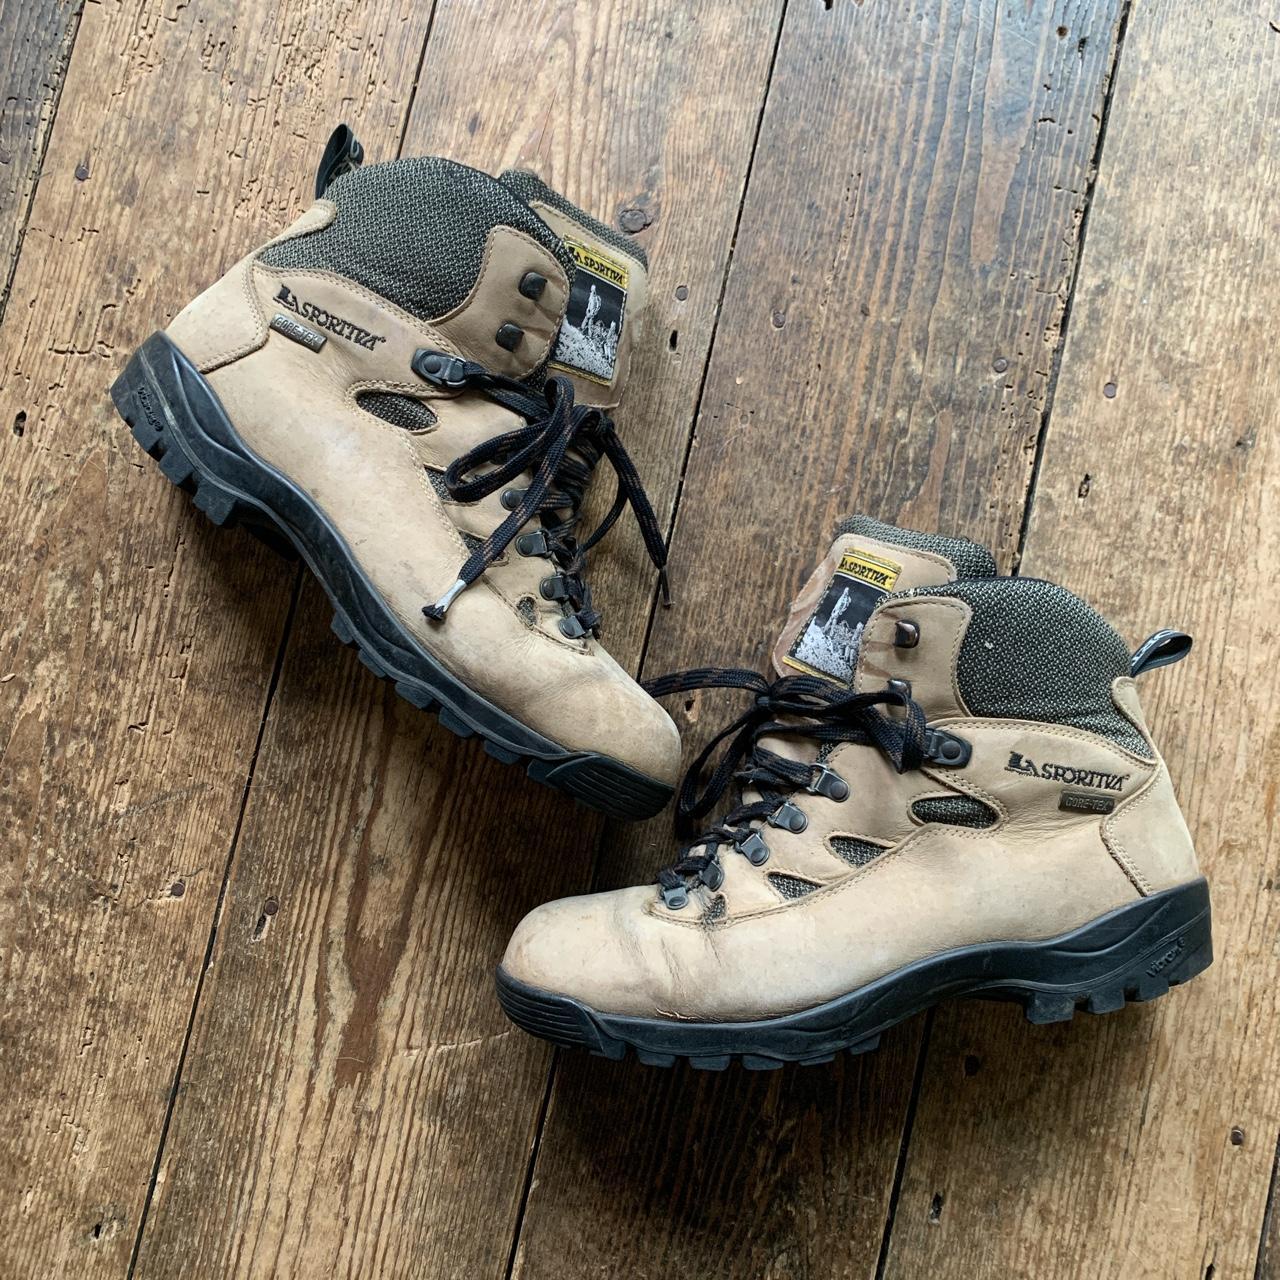 Vintage 80s / 90s La Sportiva Hiking Walking Boots.... - Depop